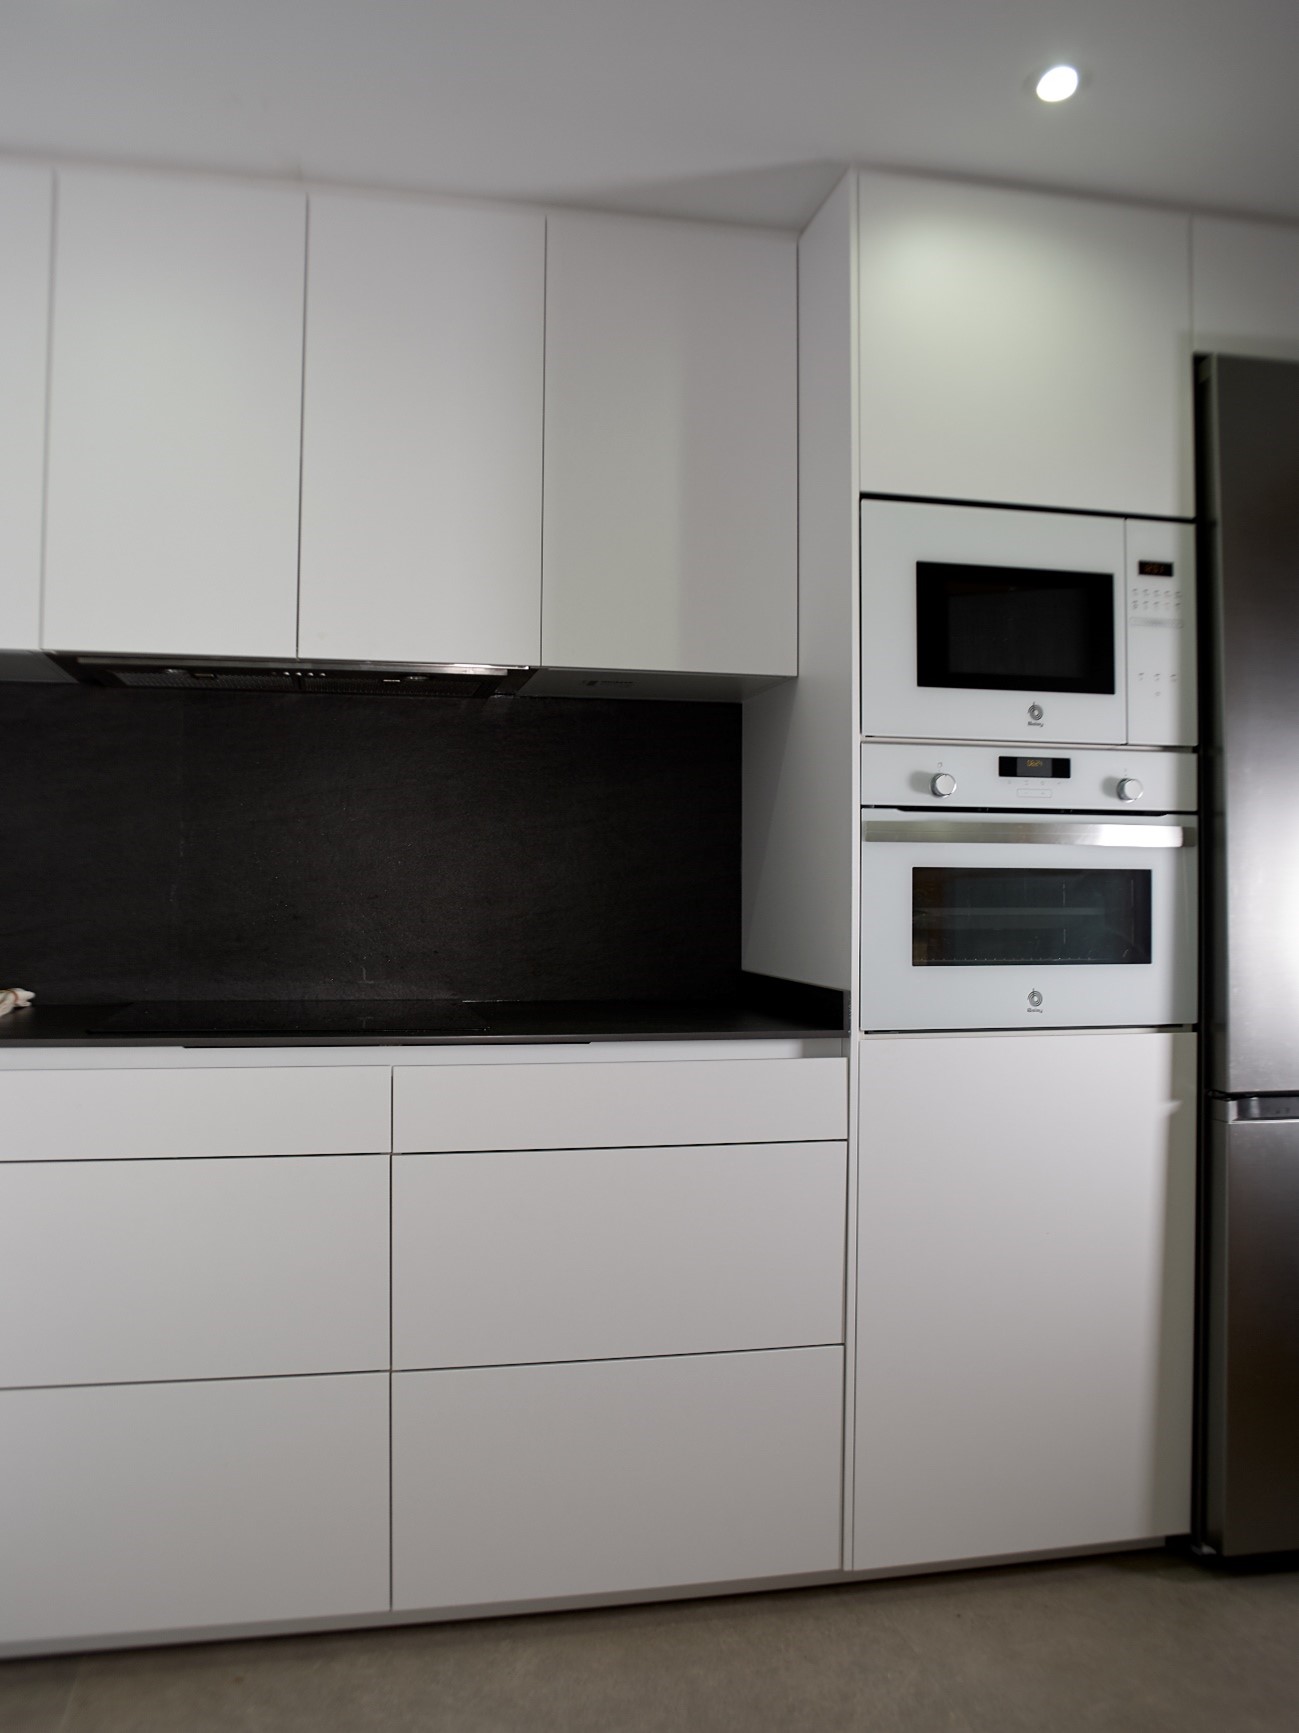 Imagen cocina blanco y negro con columna de microondas y horno 